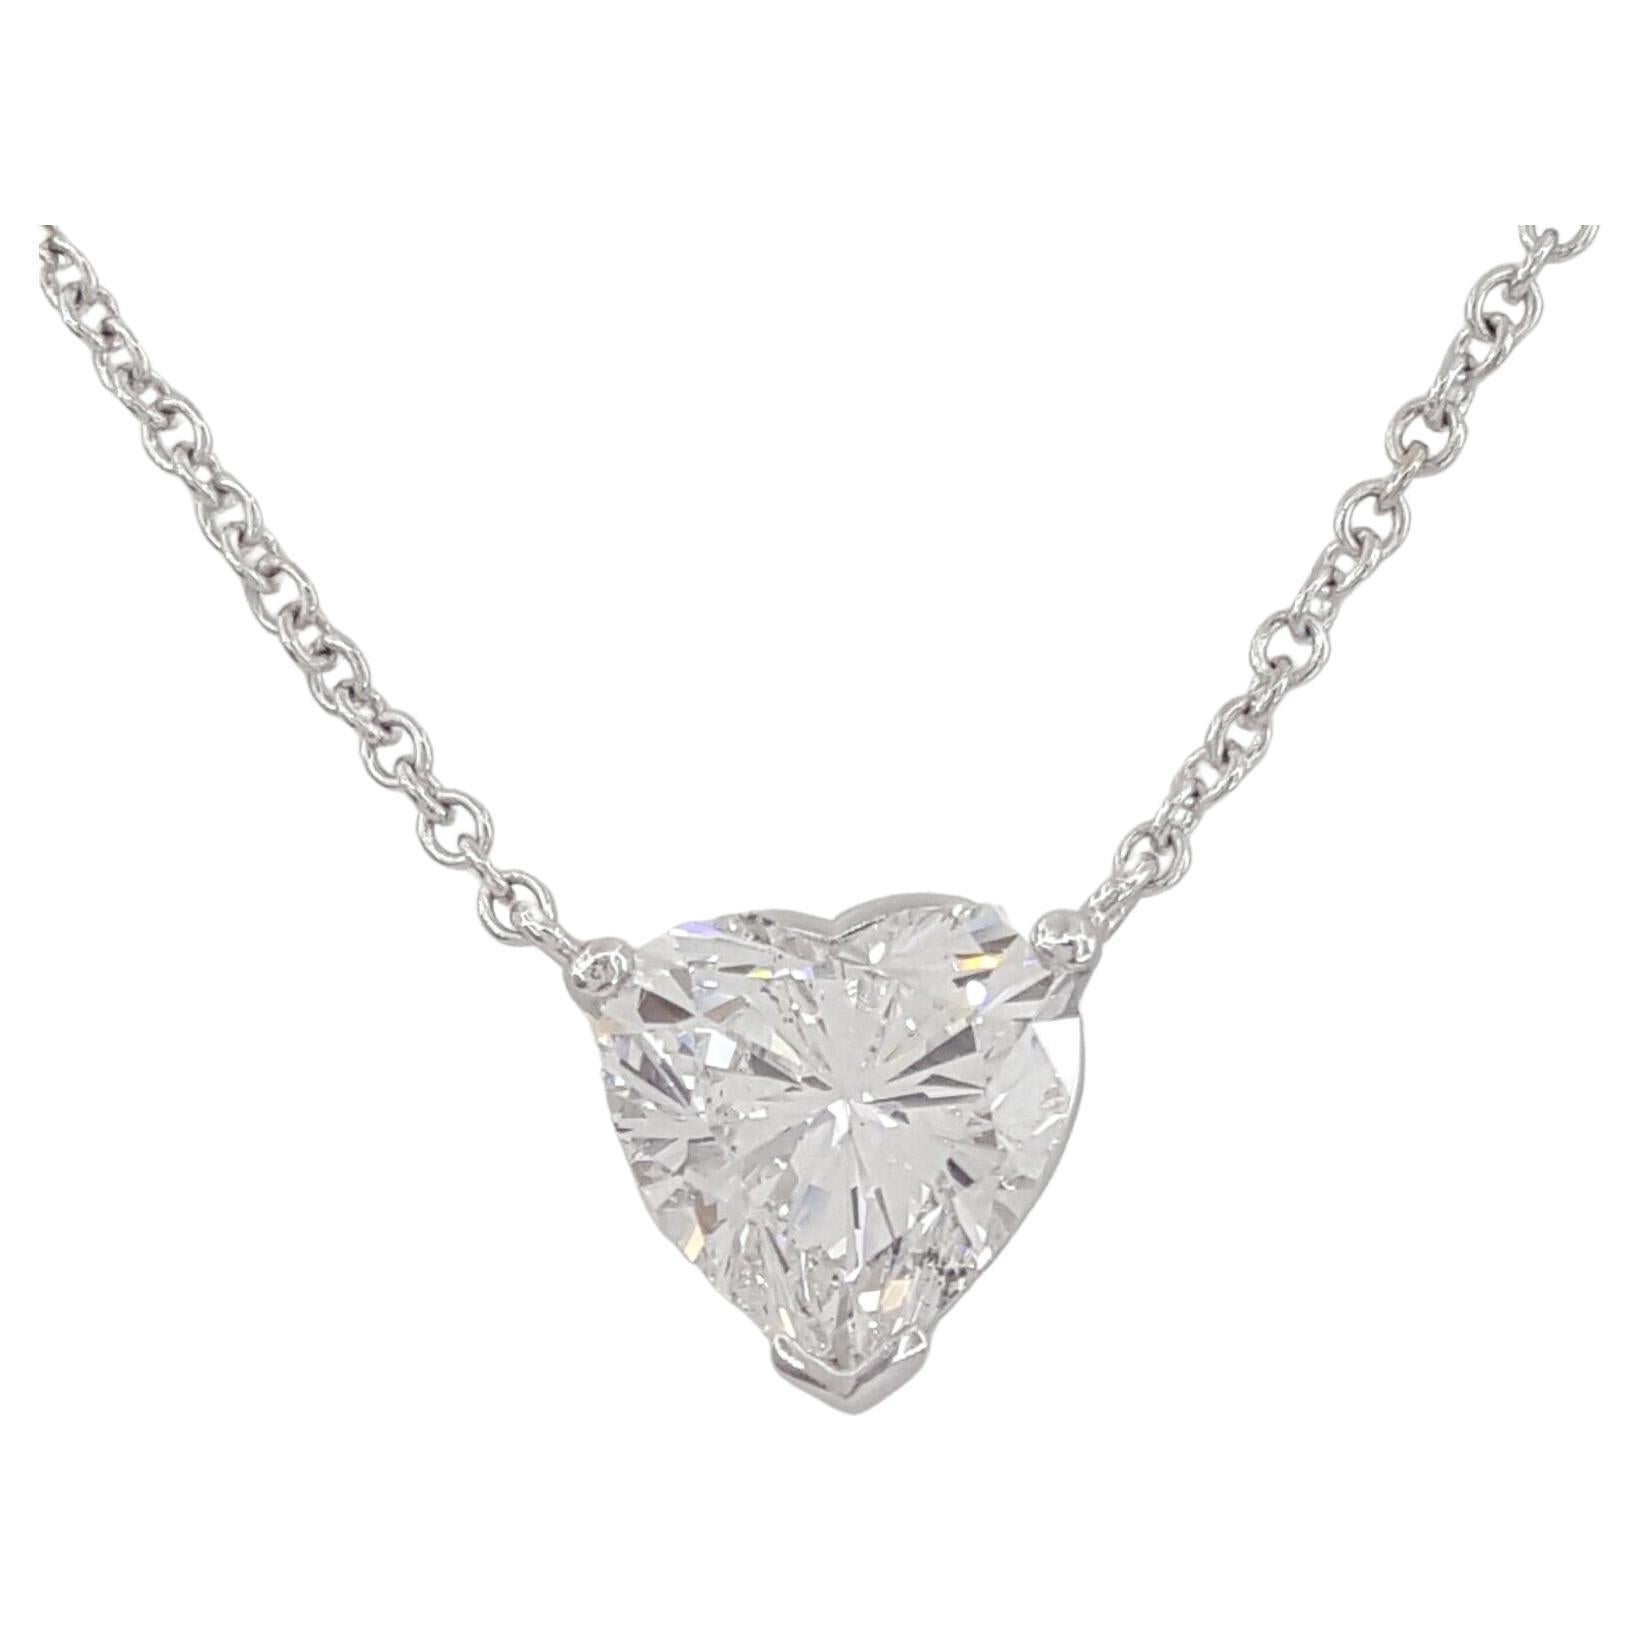 GIA Certified 3.12 Carat Heart Cut Diamond Pendant Necklace For Sale